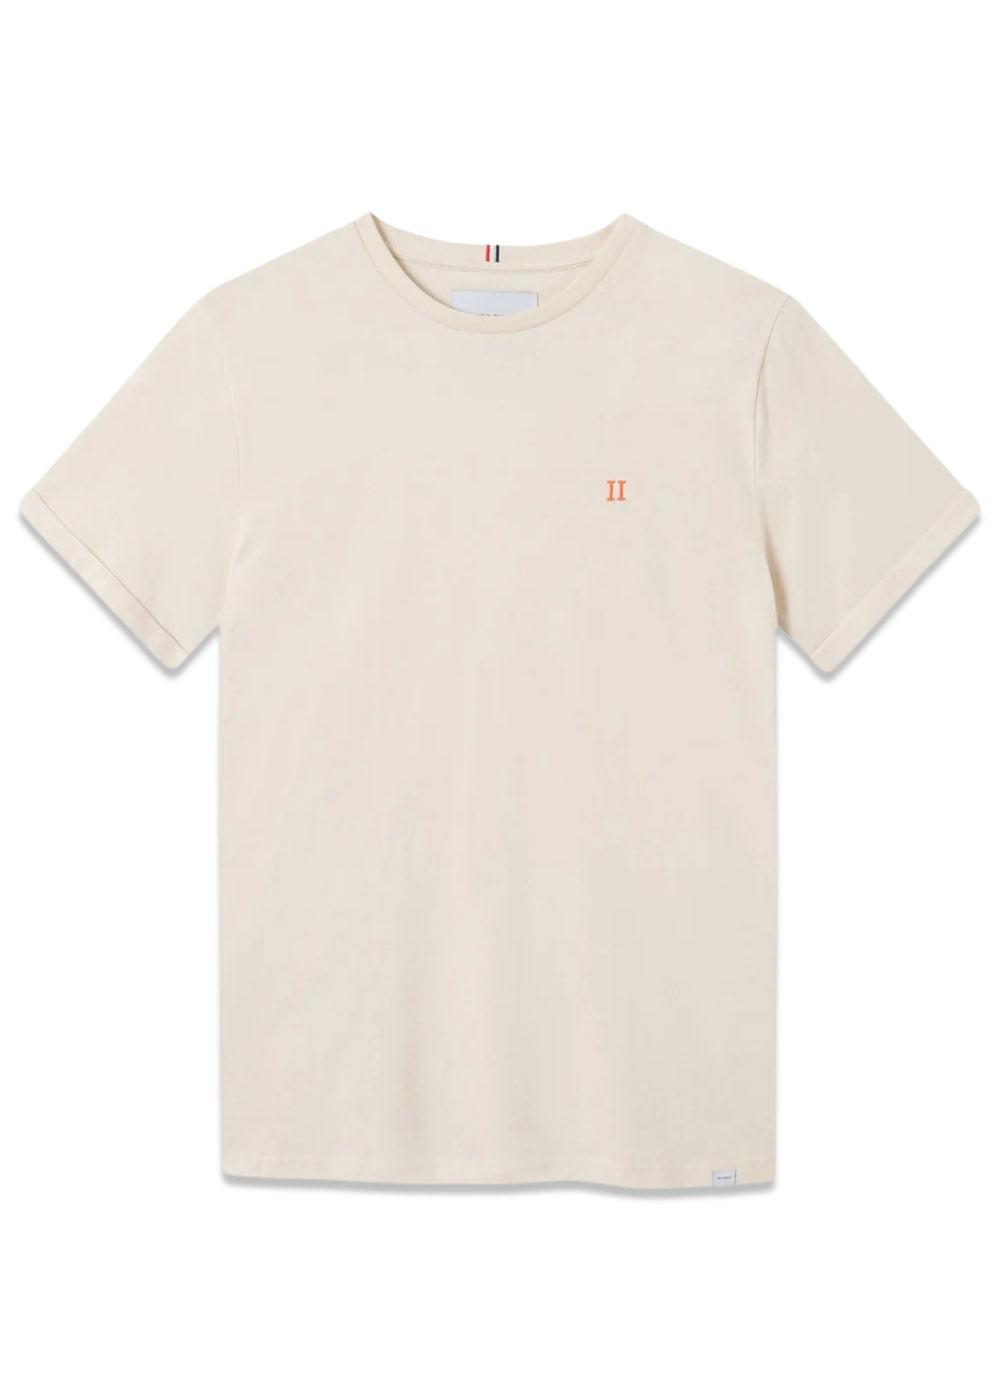 Nørregaard T-Shirt - Ivory/Orange